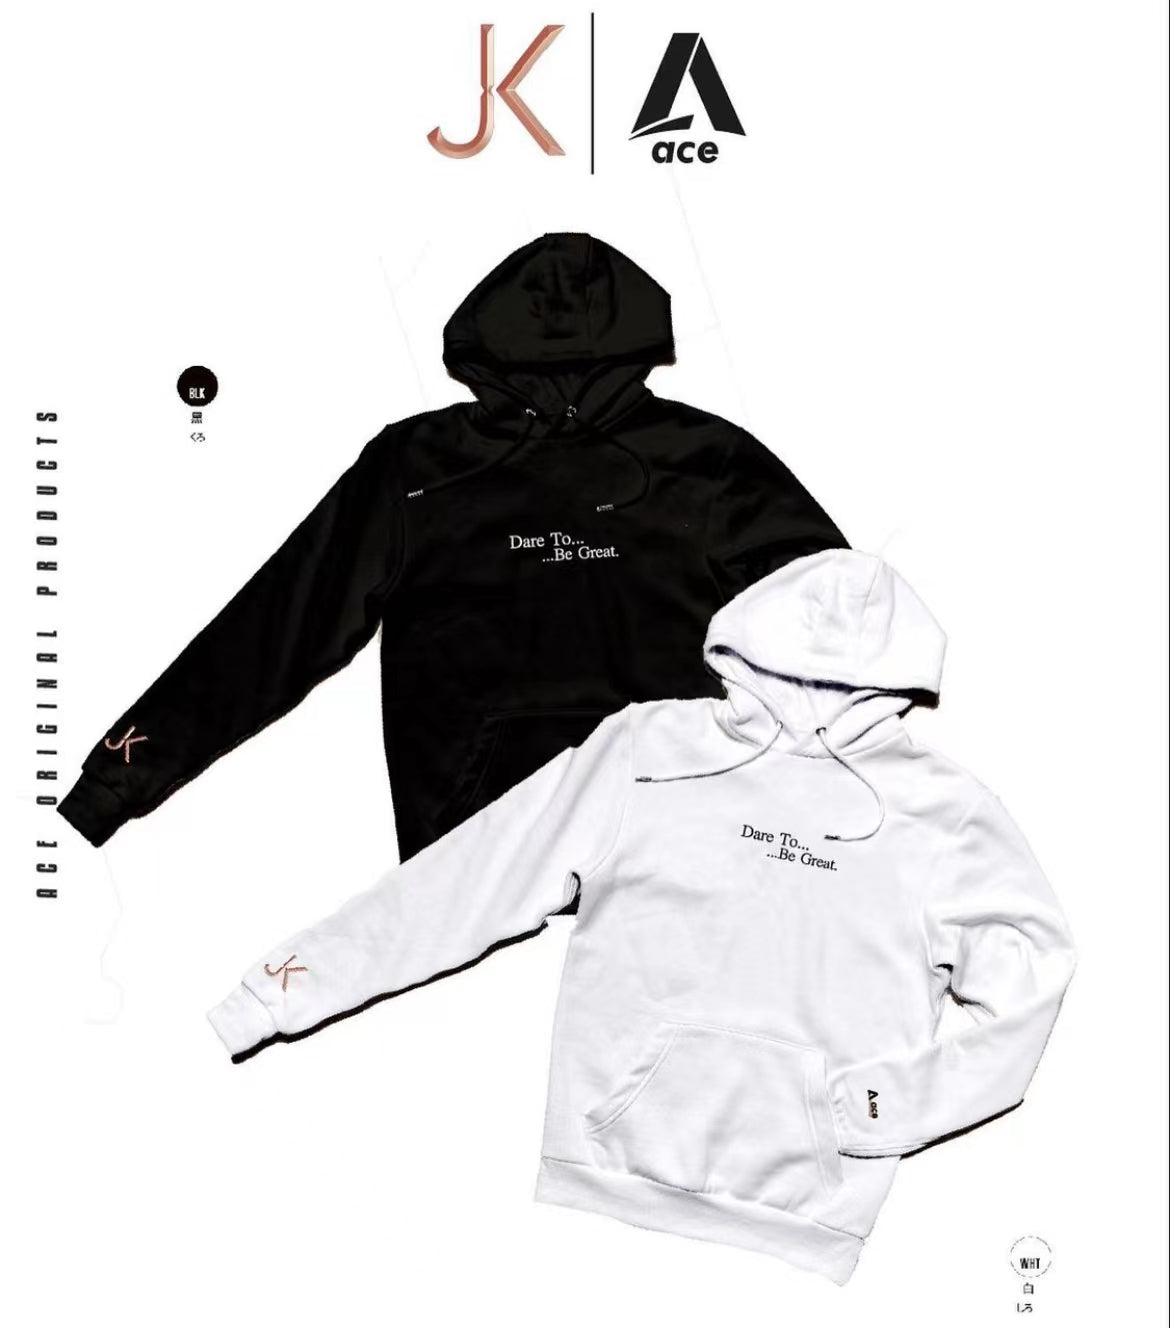 品牌聯乘產品• @aceconceptstorex @ikfitbox Dare to be great. hoodies | Ace Concept Store |